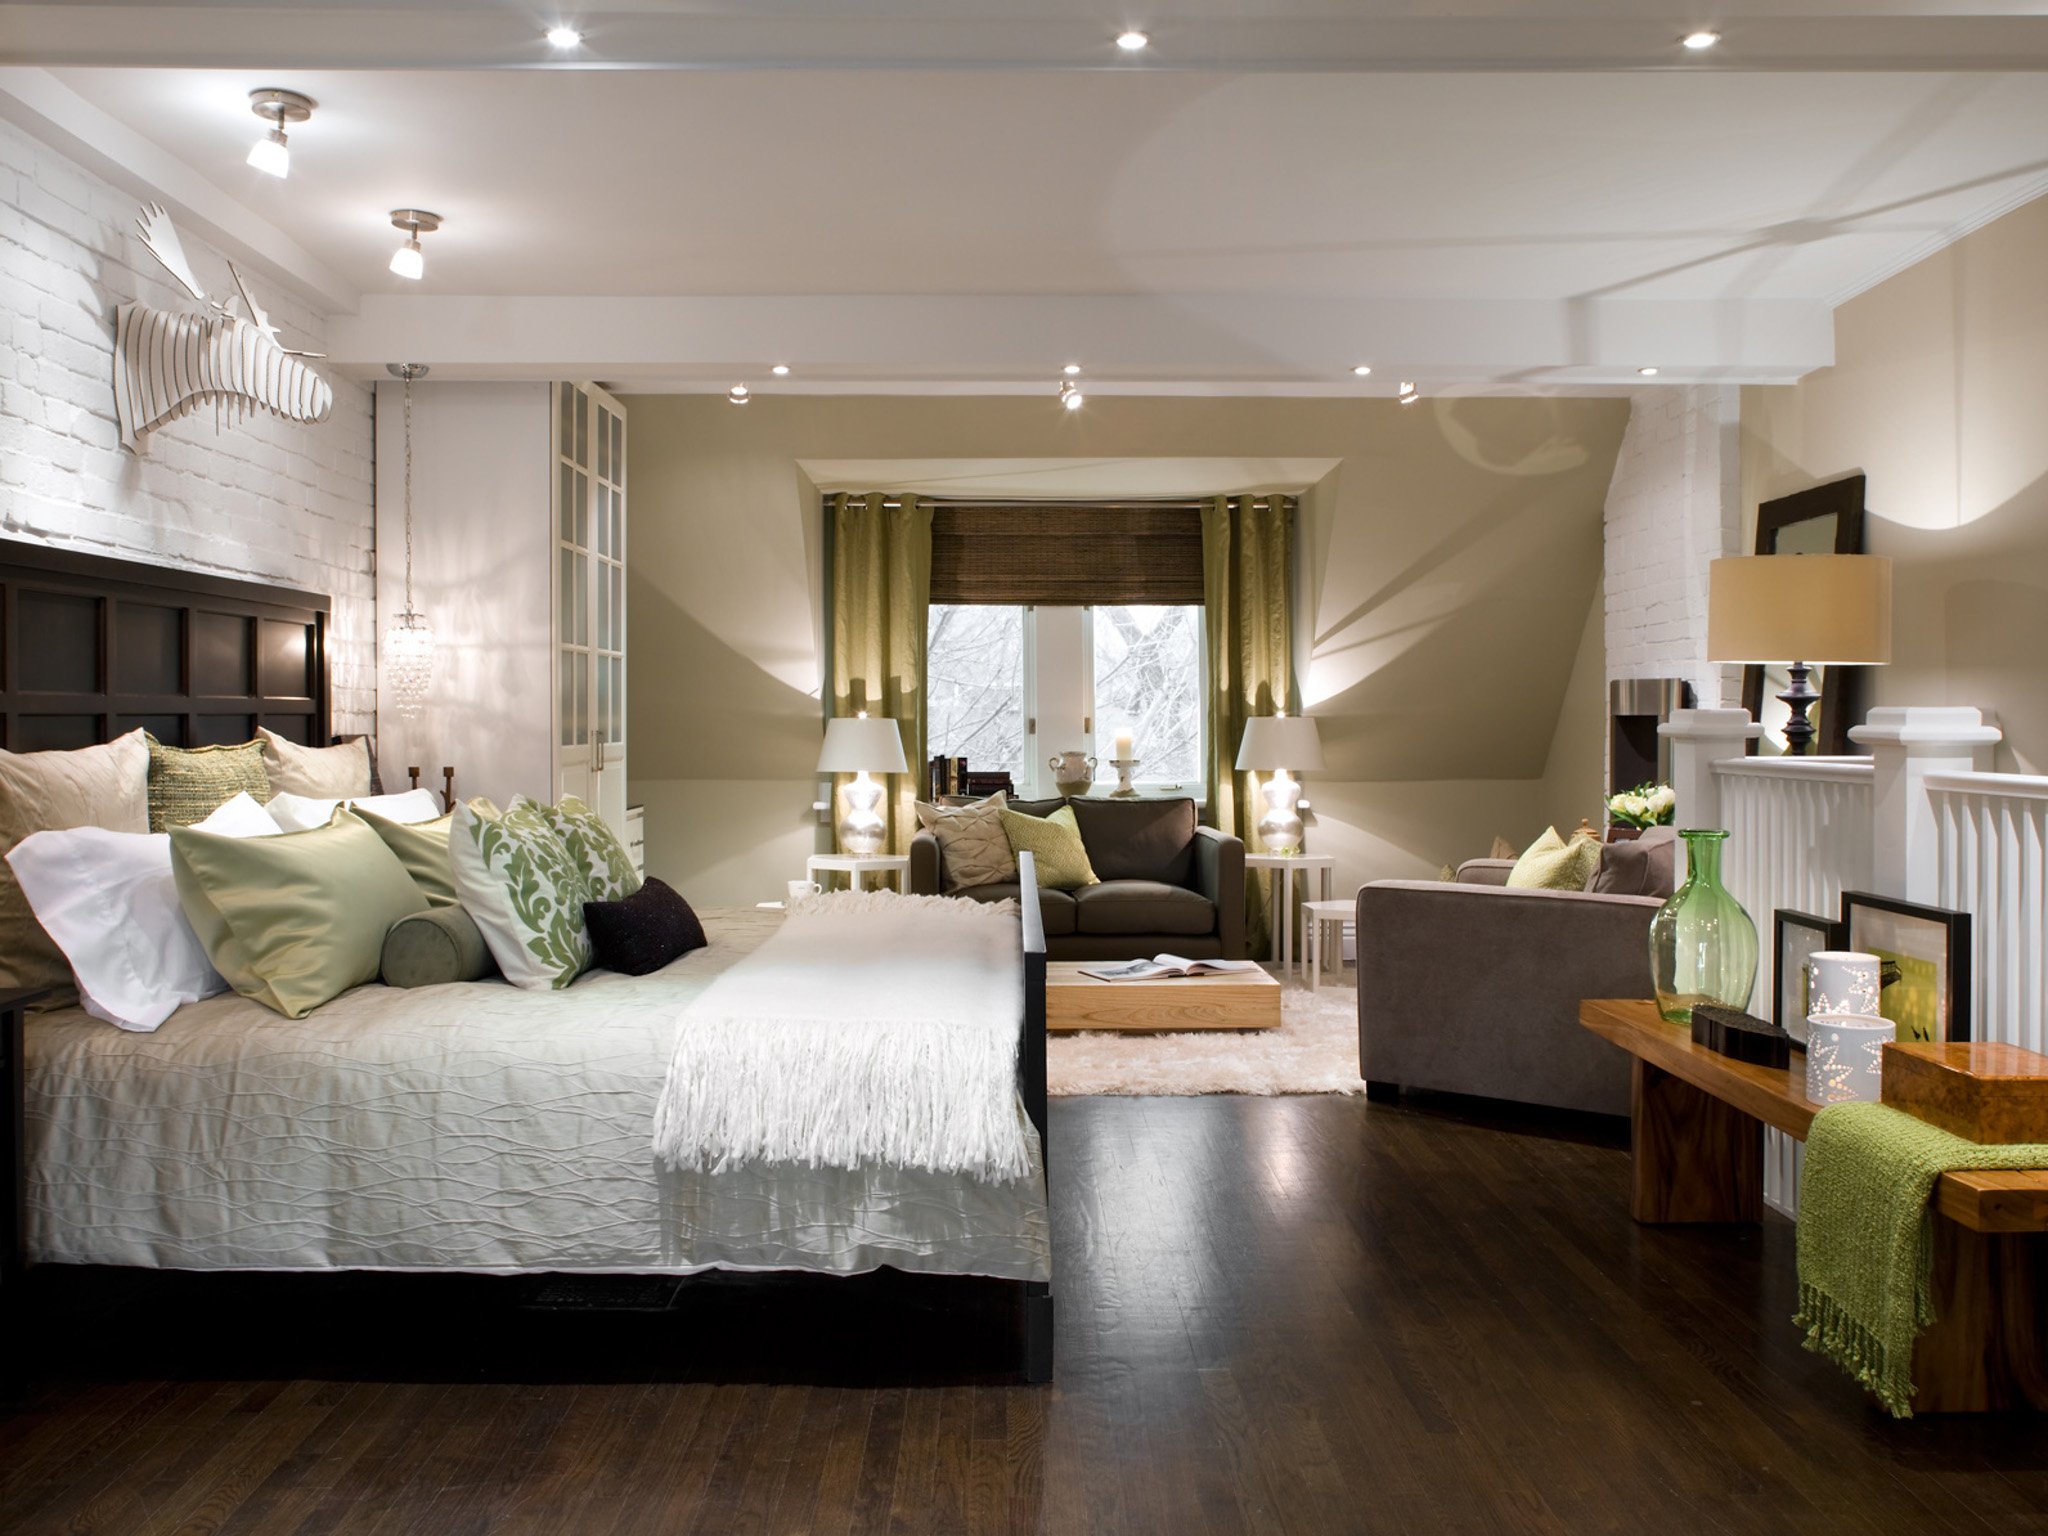 Bedroom lighting. Интерьер спальни. Красивый интерьер спальни. Спальня в современном стиле. Красивая стильная спальня.